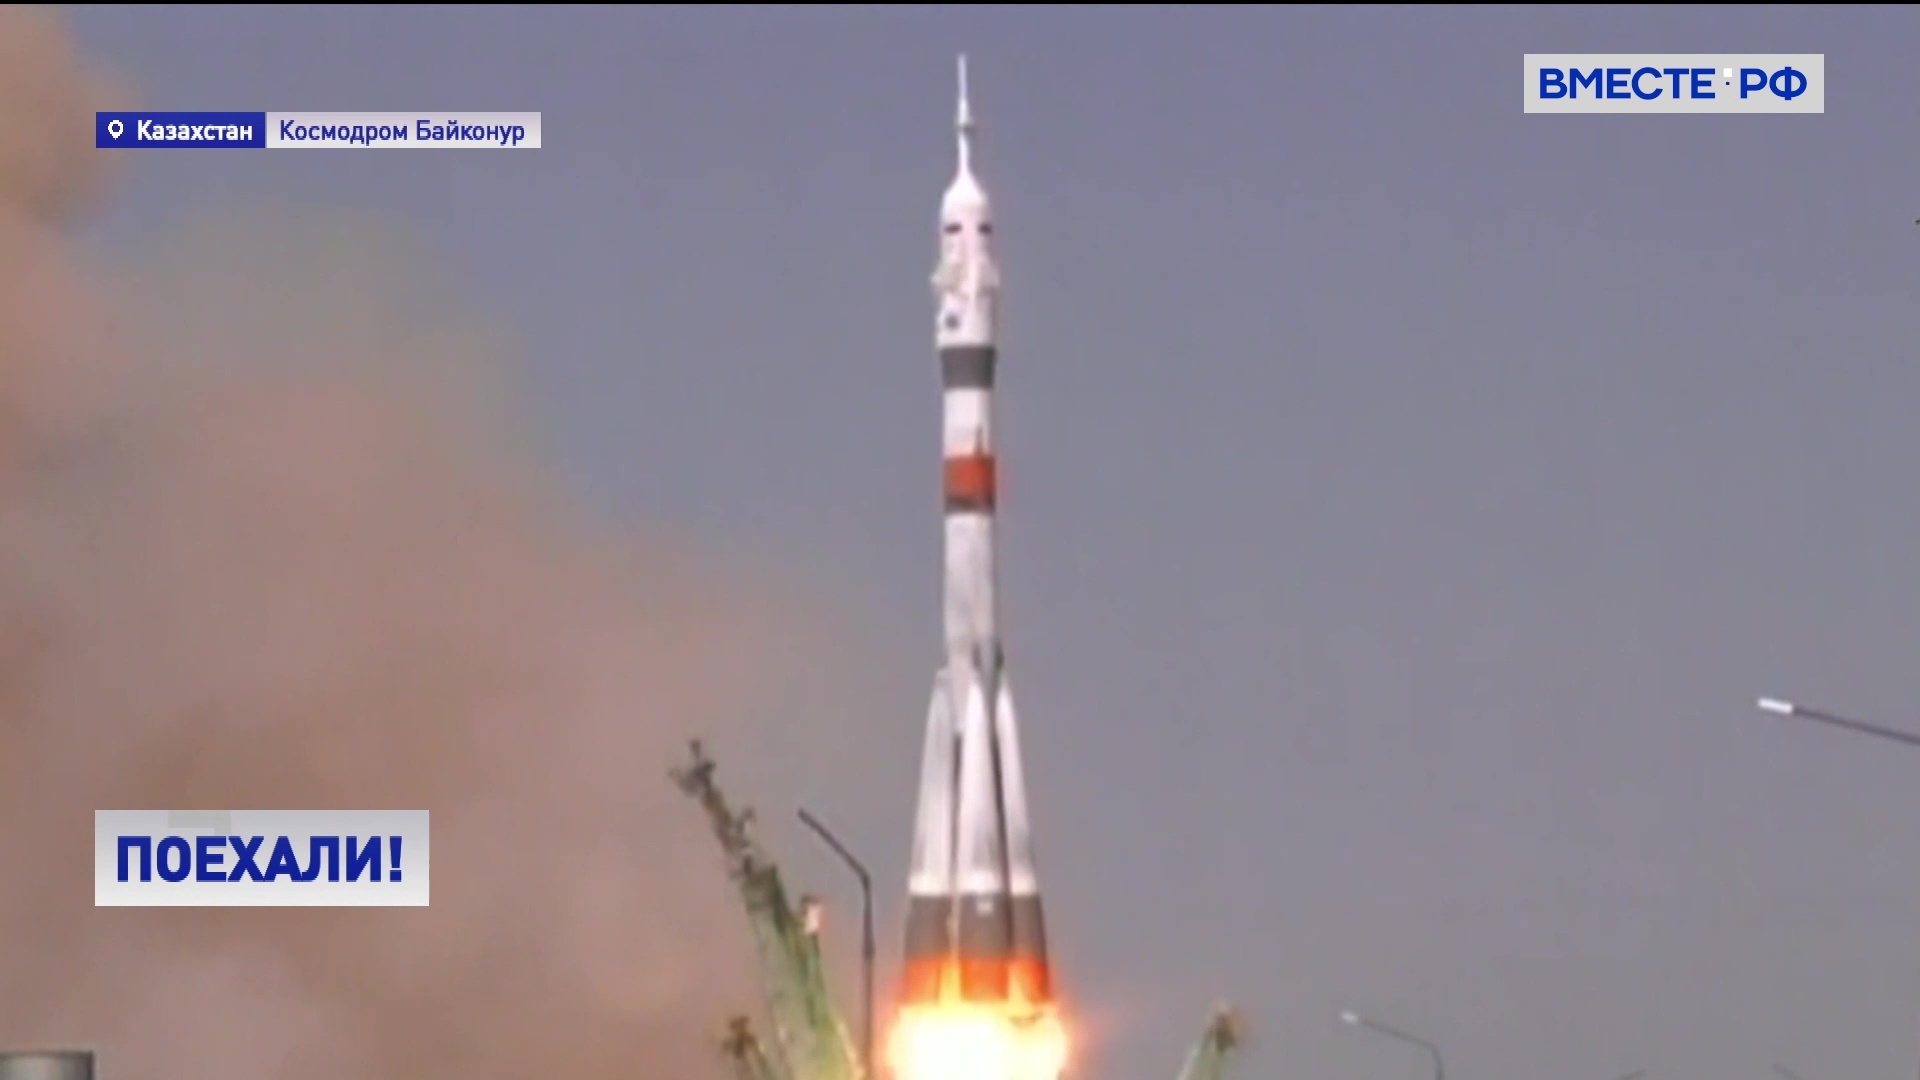 Запуск транзита. Космодром Байконур Восток 1. Ракета Юрия Гагарина Восток-1. Ракета Восток 1 пуск.